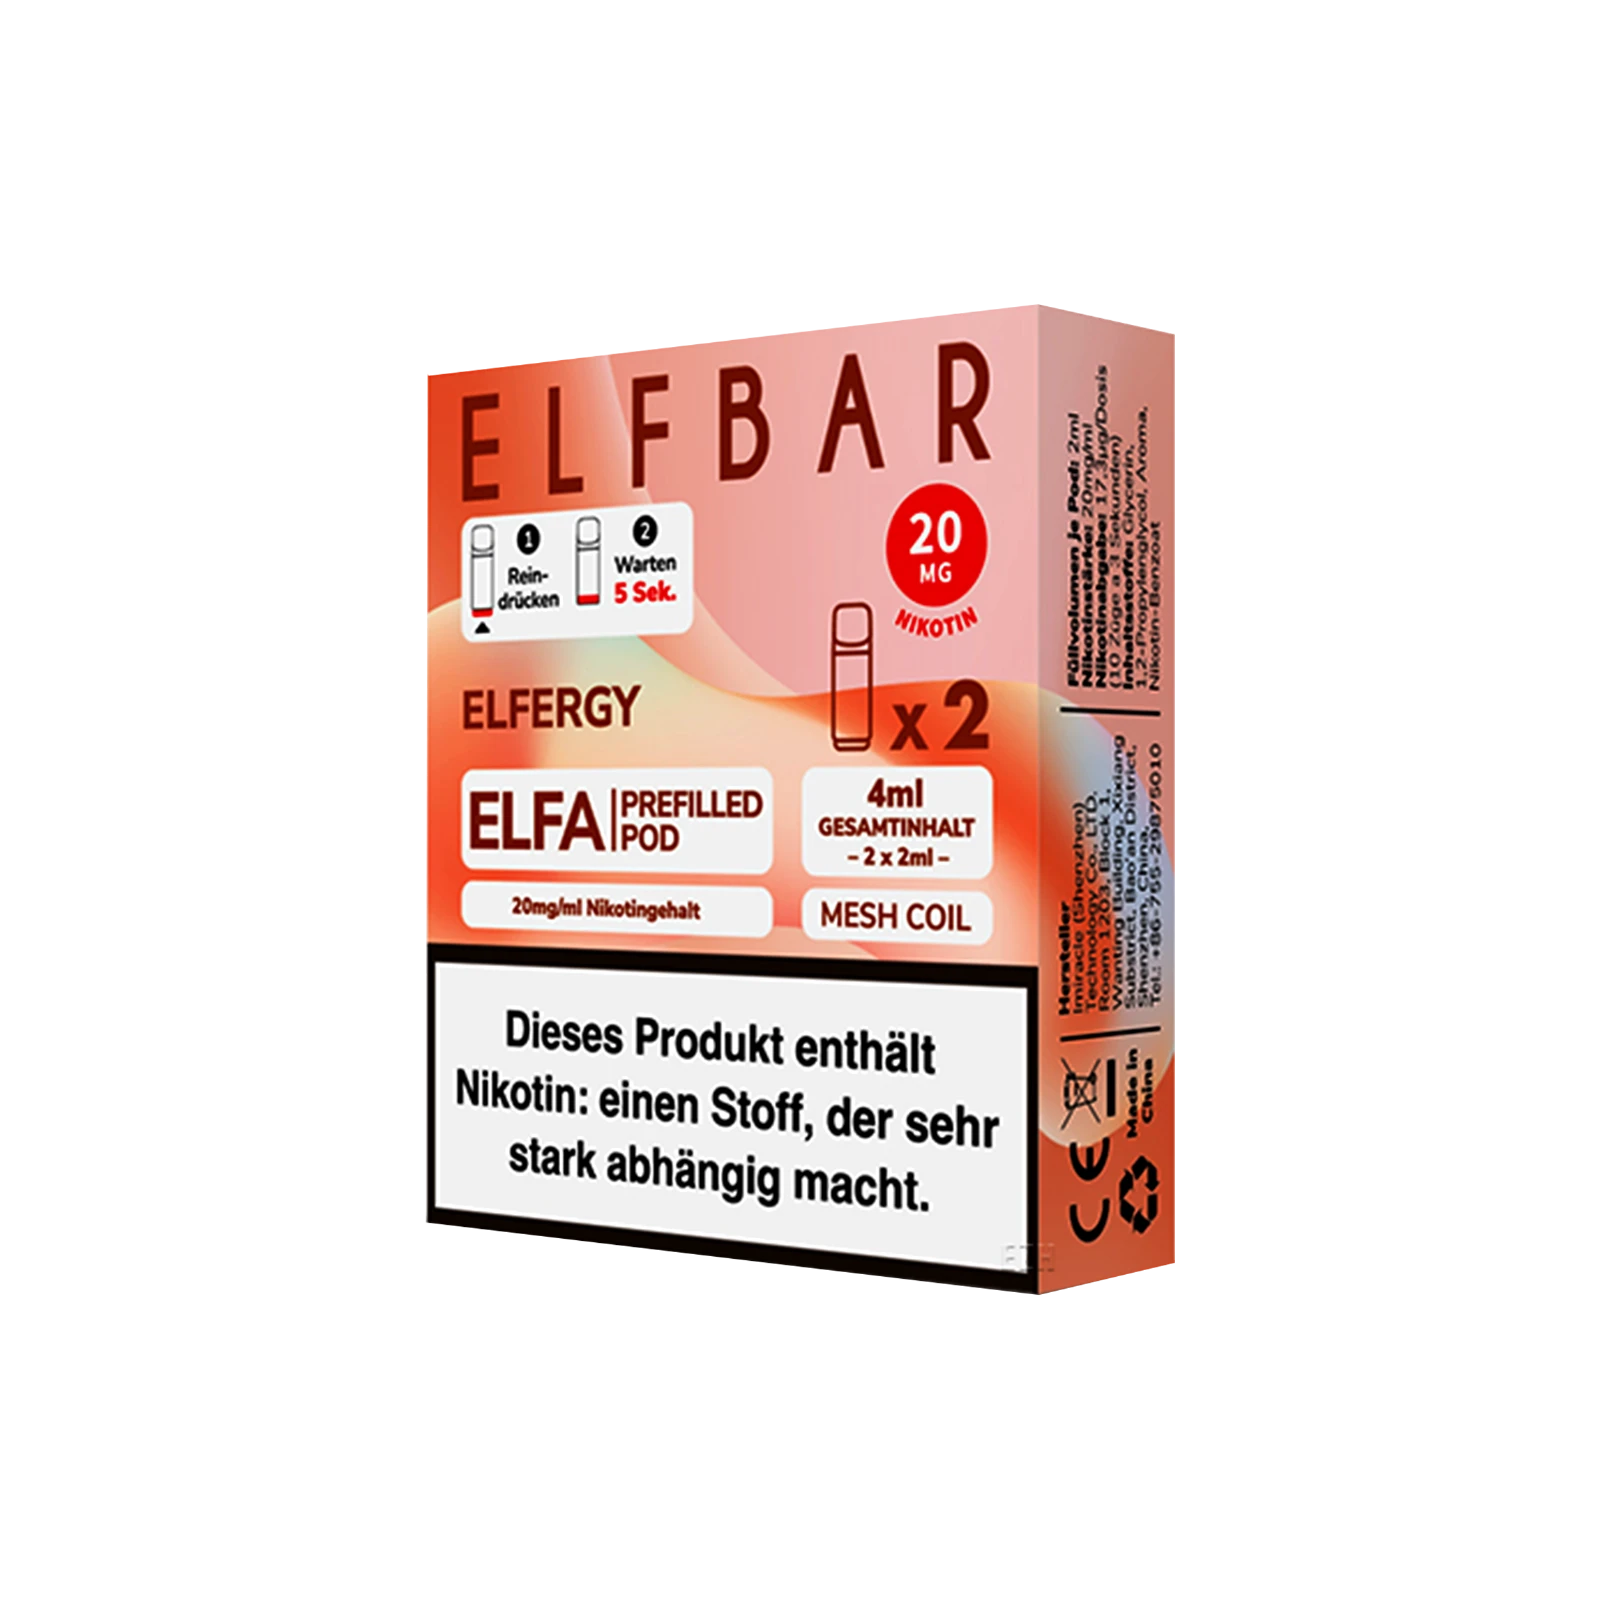 Elf Bar ELFA CP Prefilled Pod Elfergy | Neue Liquid Sorten